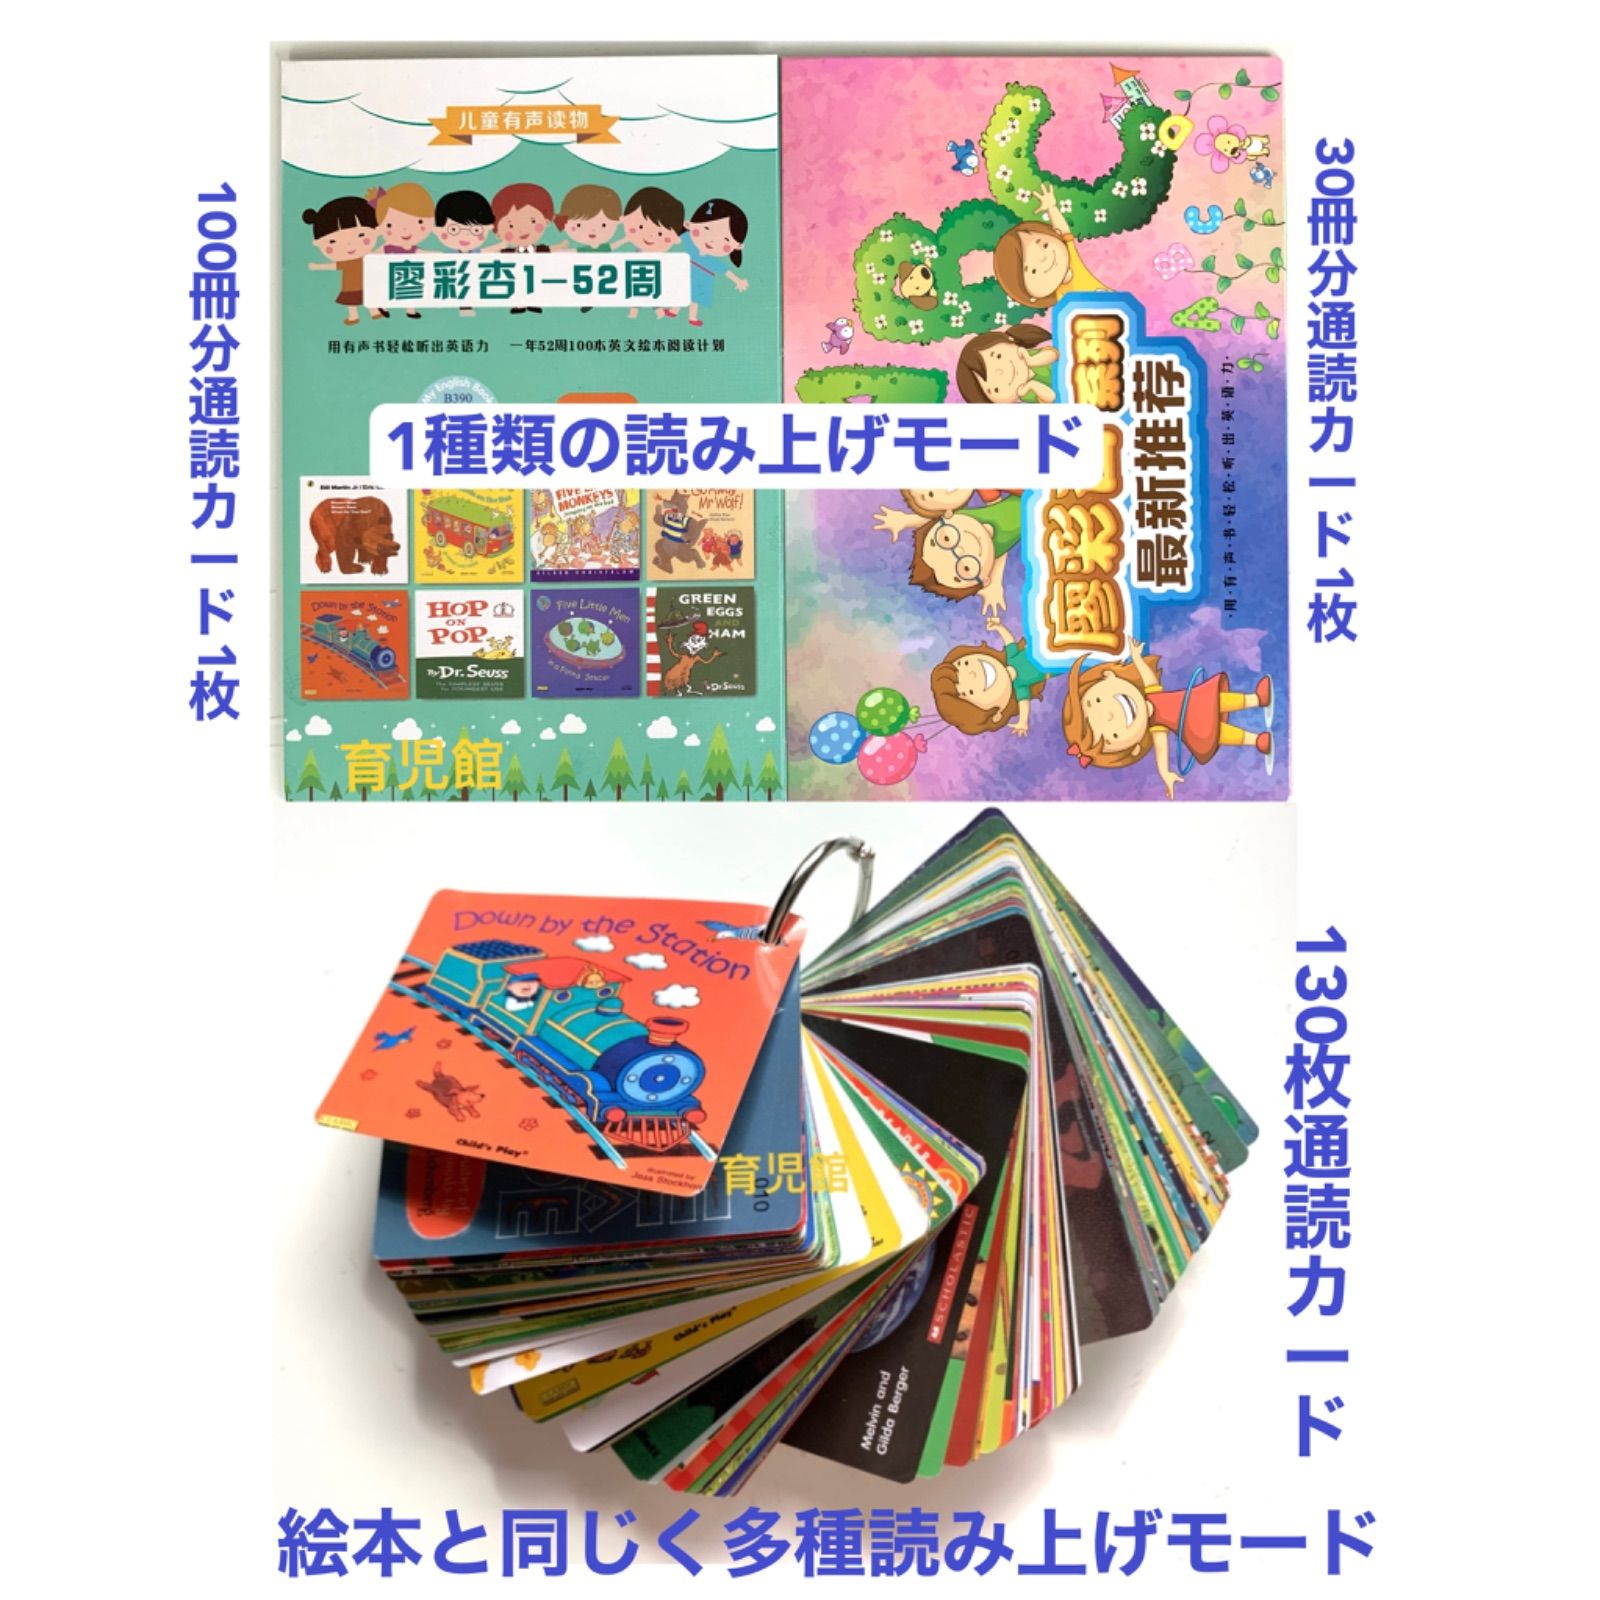 桜の花びら(厚みあり) Liao絵本130枚通読カード - 通販